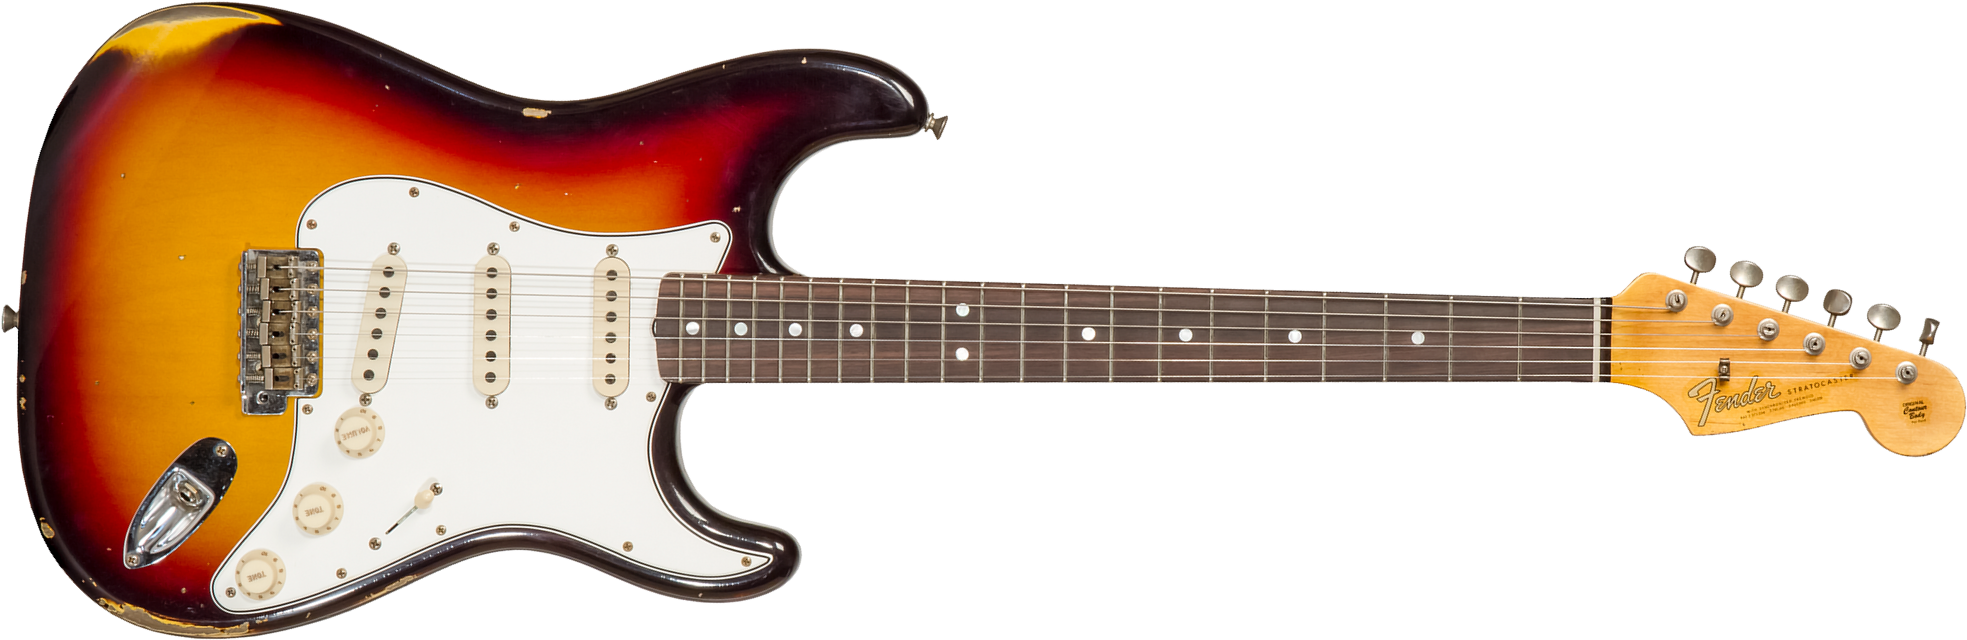 Fender Custom Shop Strat Late 1964 3s Trem Rw #cz569756 - Relic Target 3-color Sunburst - Str shape electric guitar - Main picture